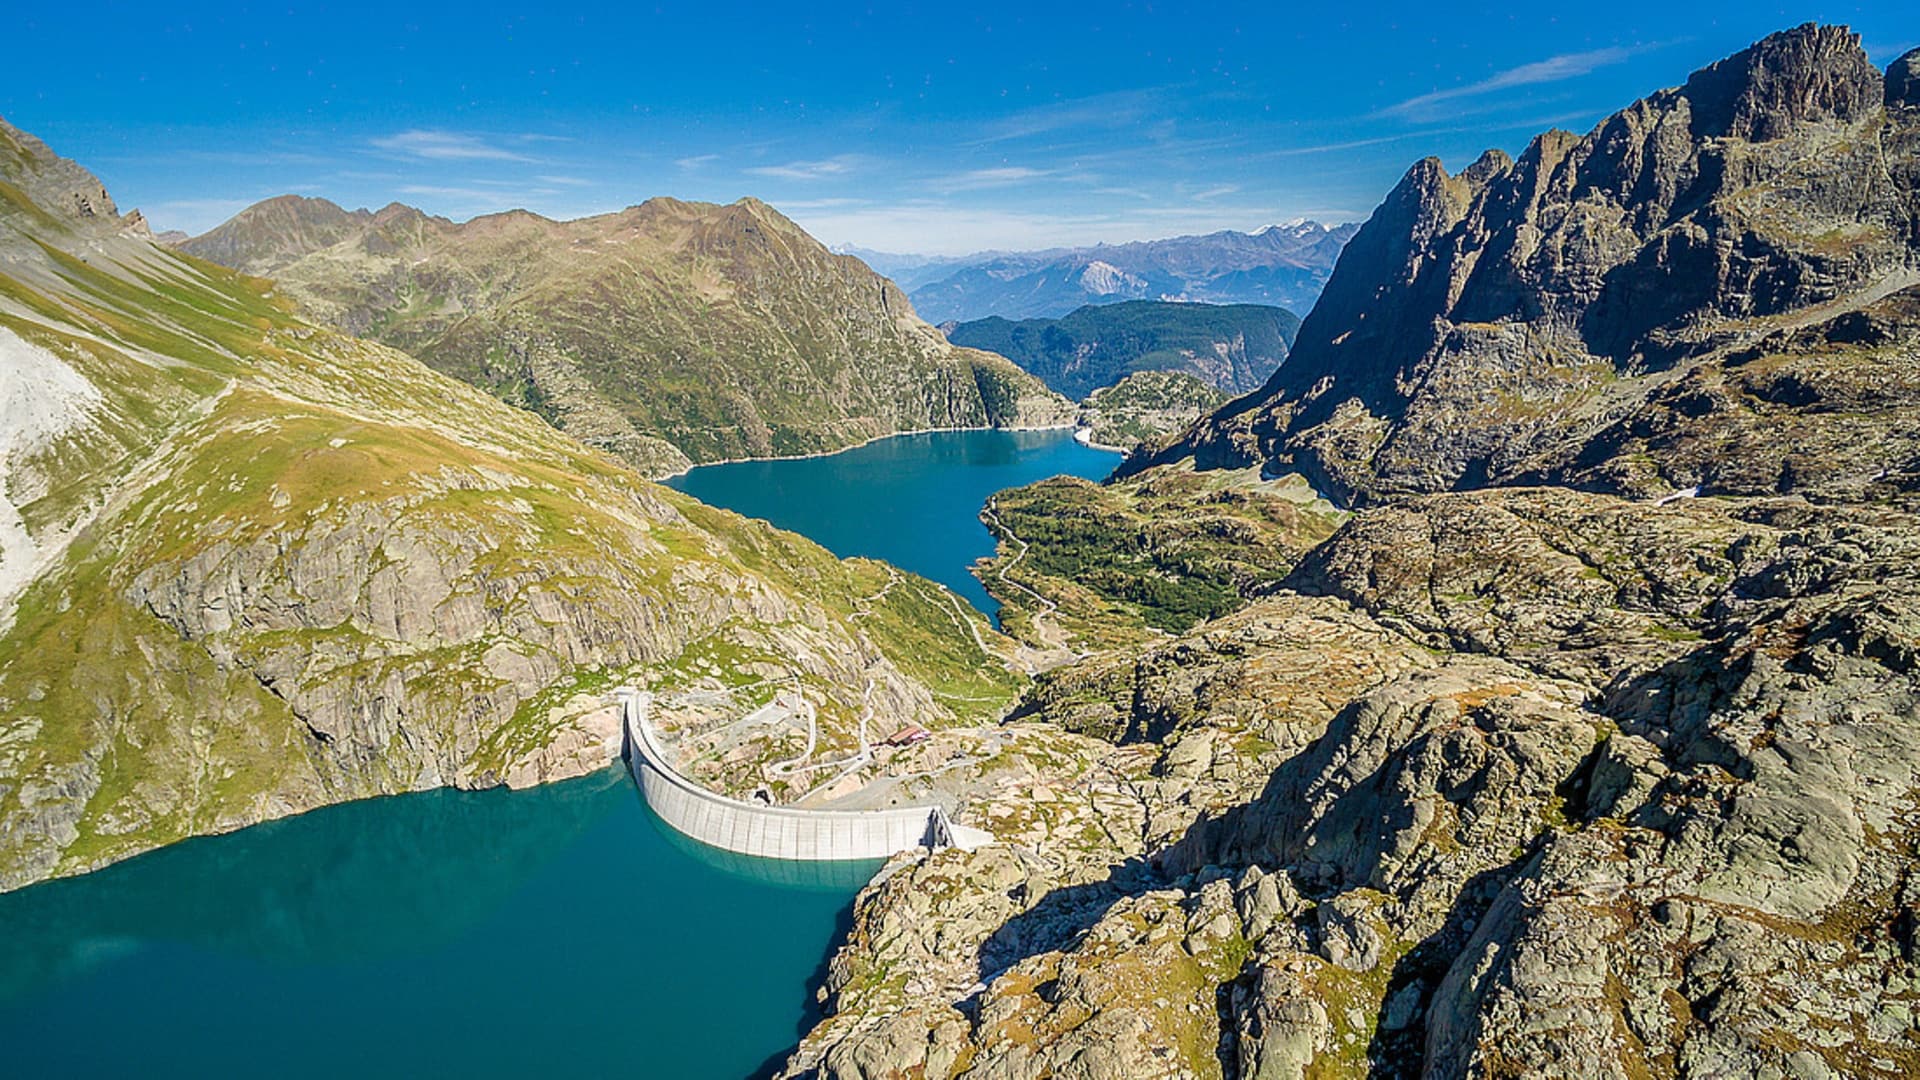 Inside Switzerland's giant water battery